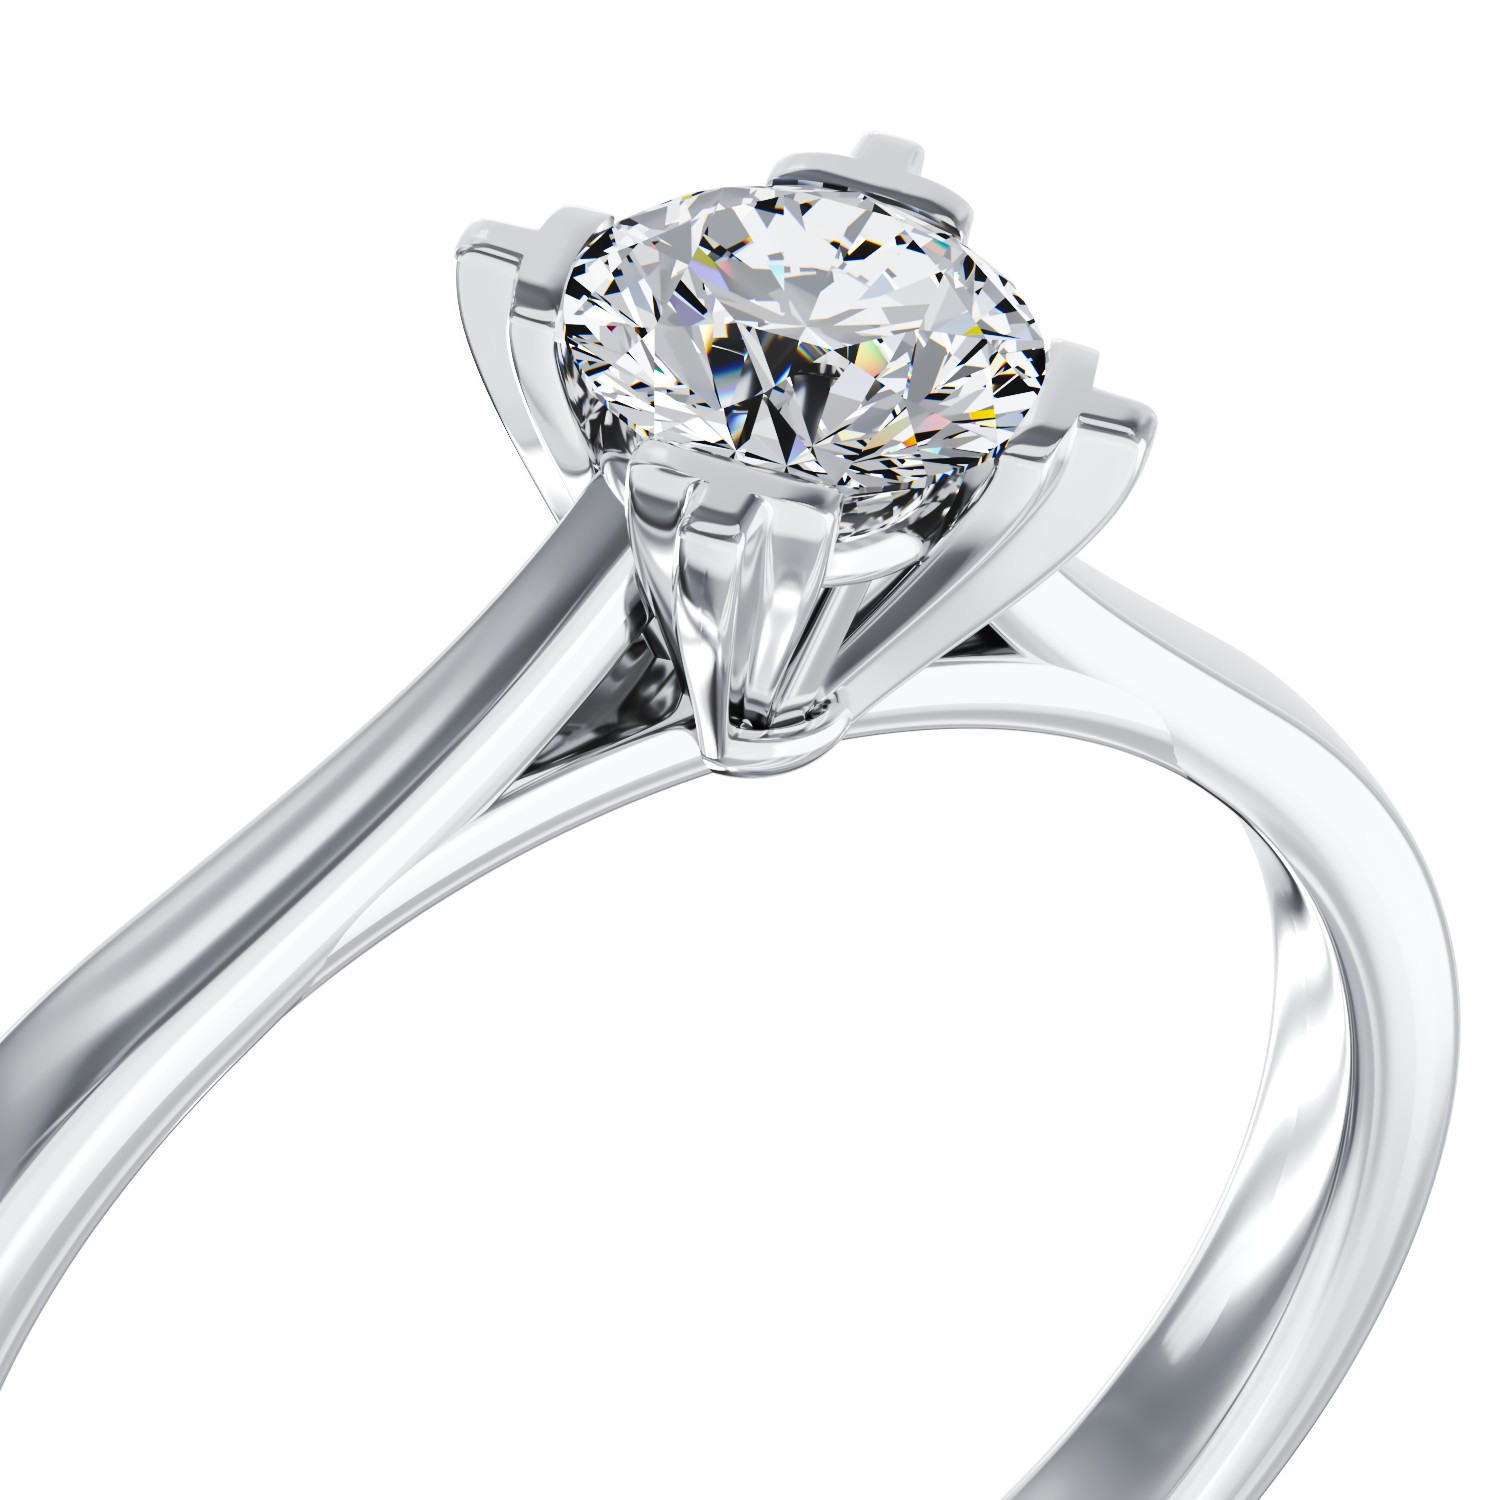 Eljegyzési gyűrű 18K-os fehér aranyból egy 0,26ct solitaire gyémánttal